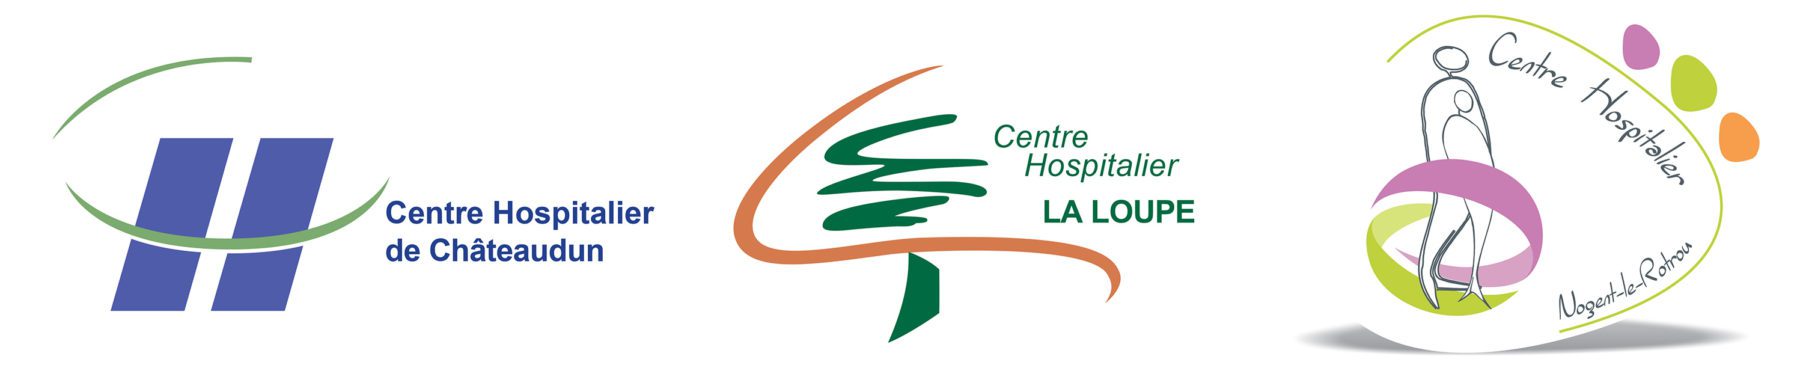 Logos des établissements de santé membre de la direction commune